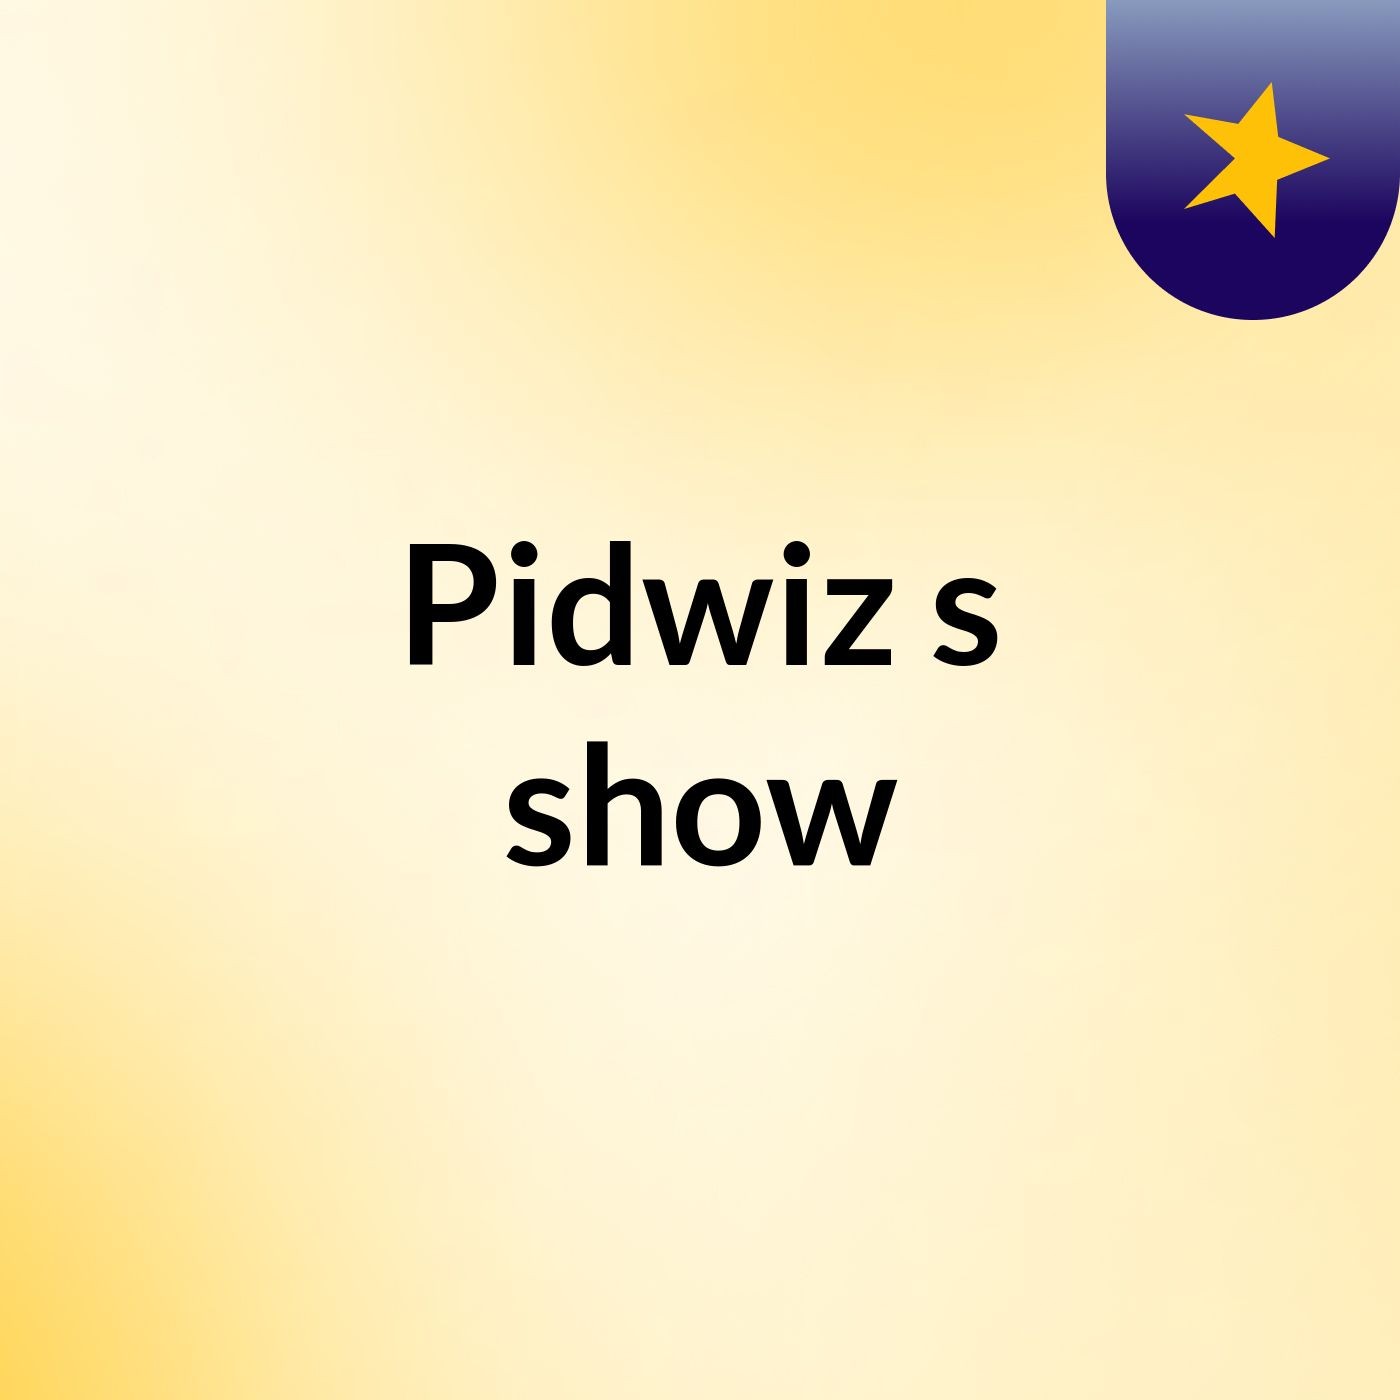 Pidwiz's show